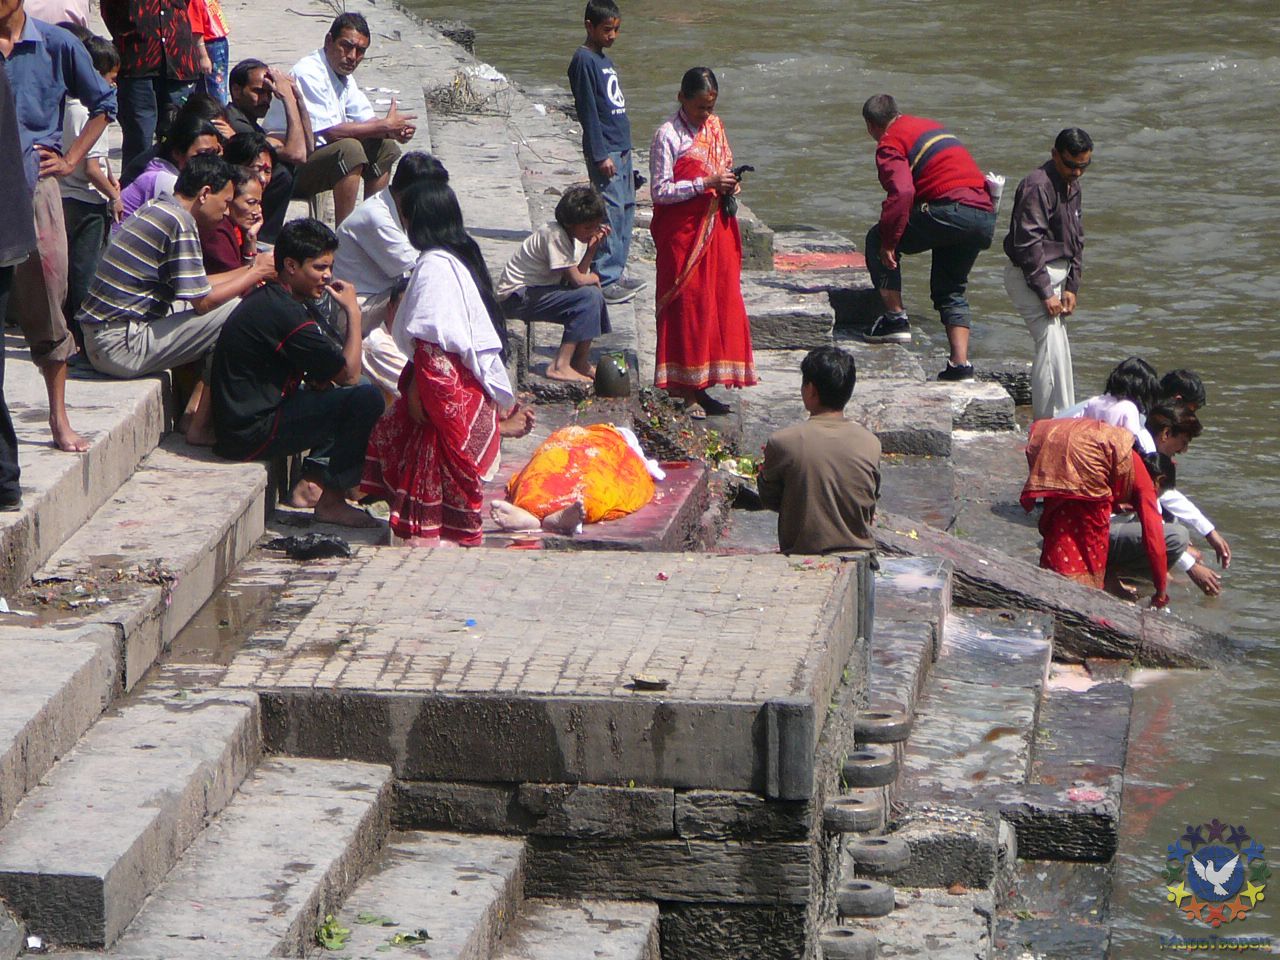 В непальском храме. Последнее прощание с усопшим. - Тибет 2006. Фотовоспоминание 5 лет спустя.